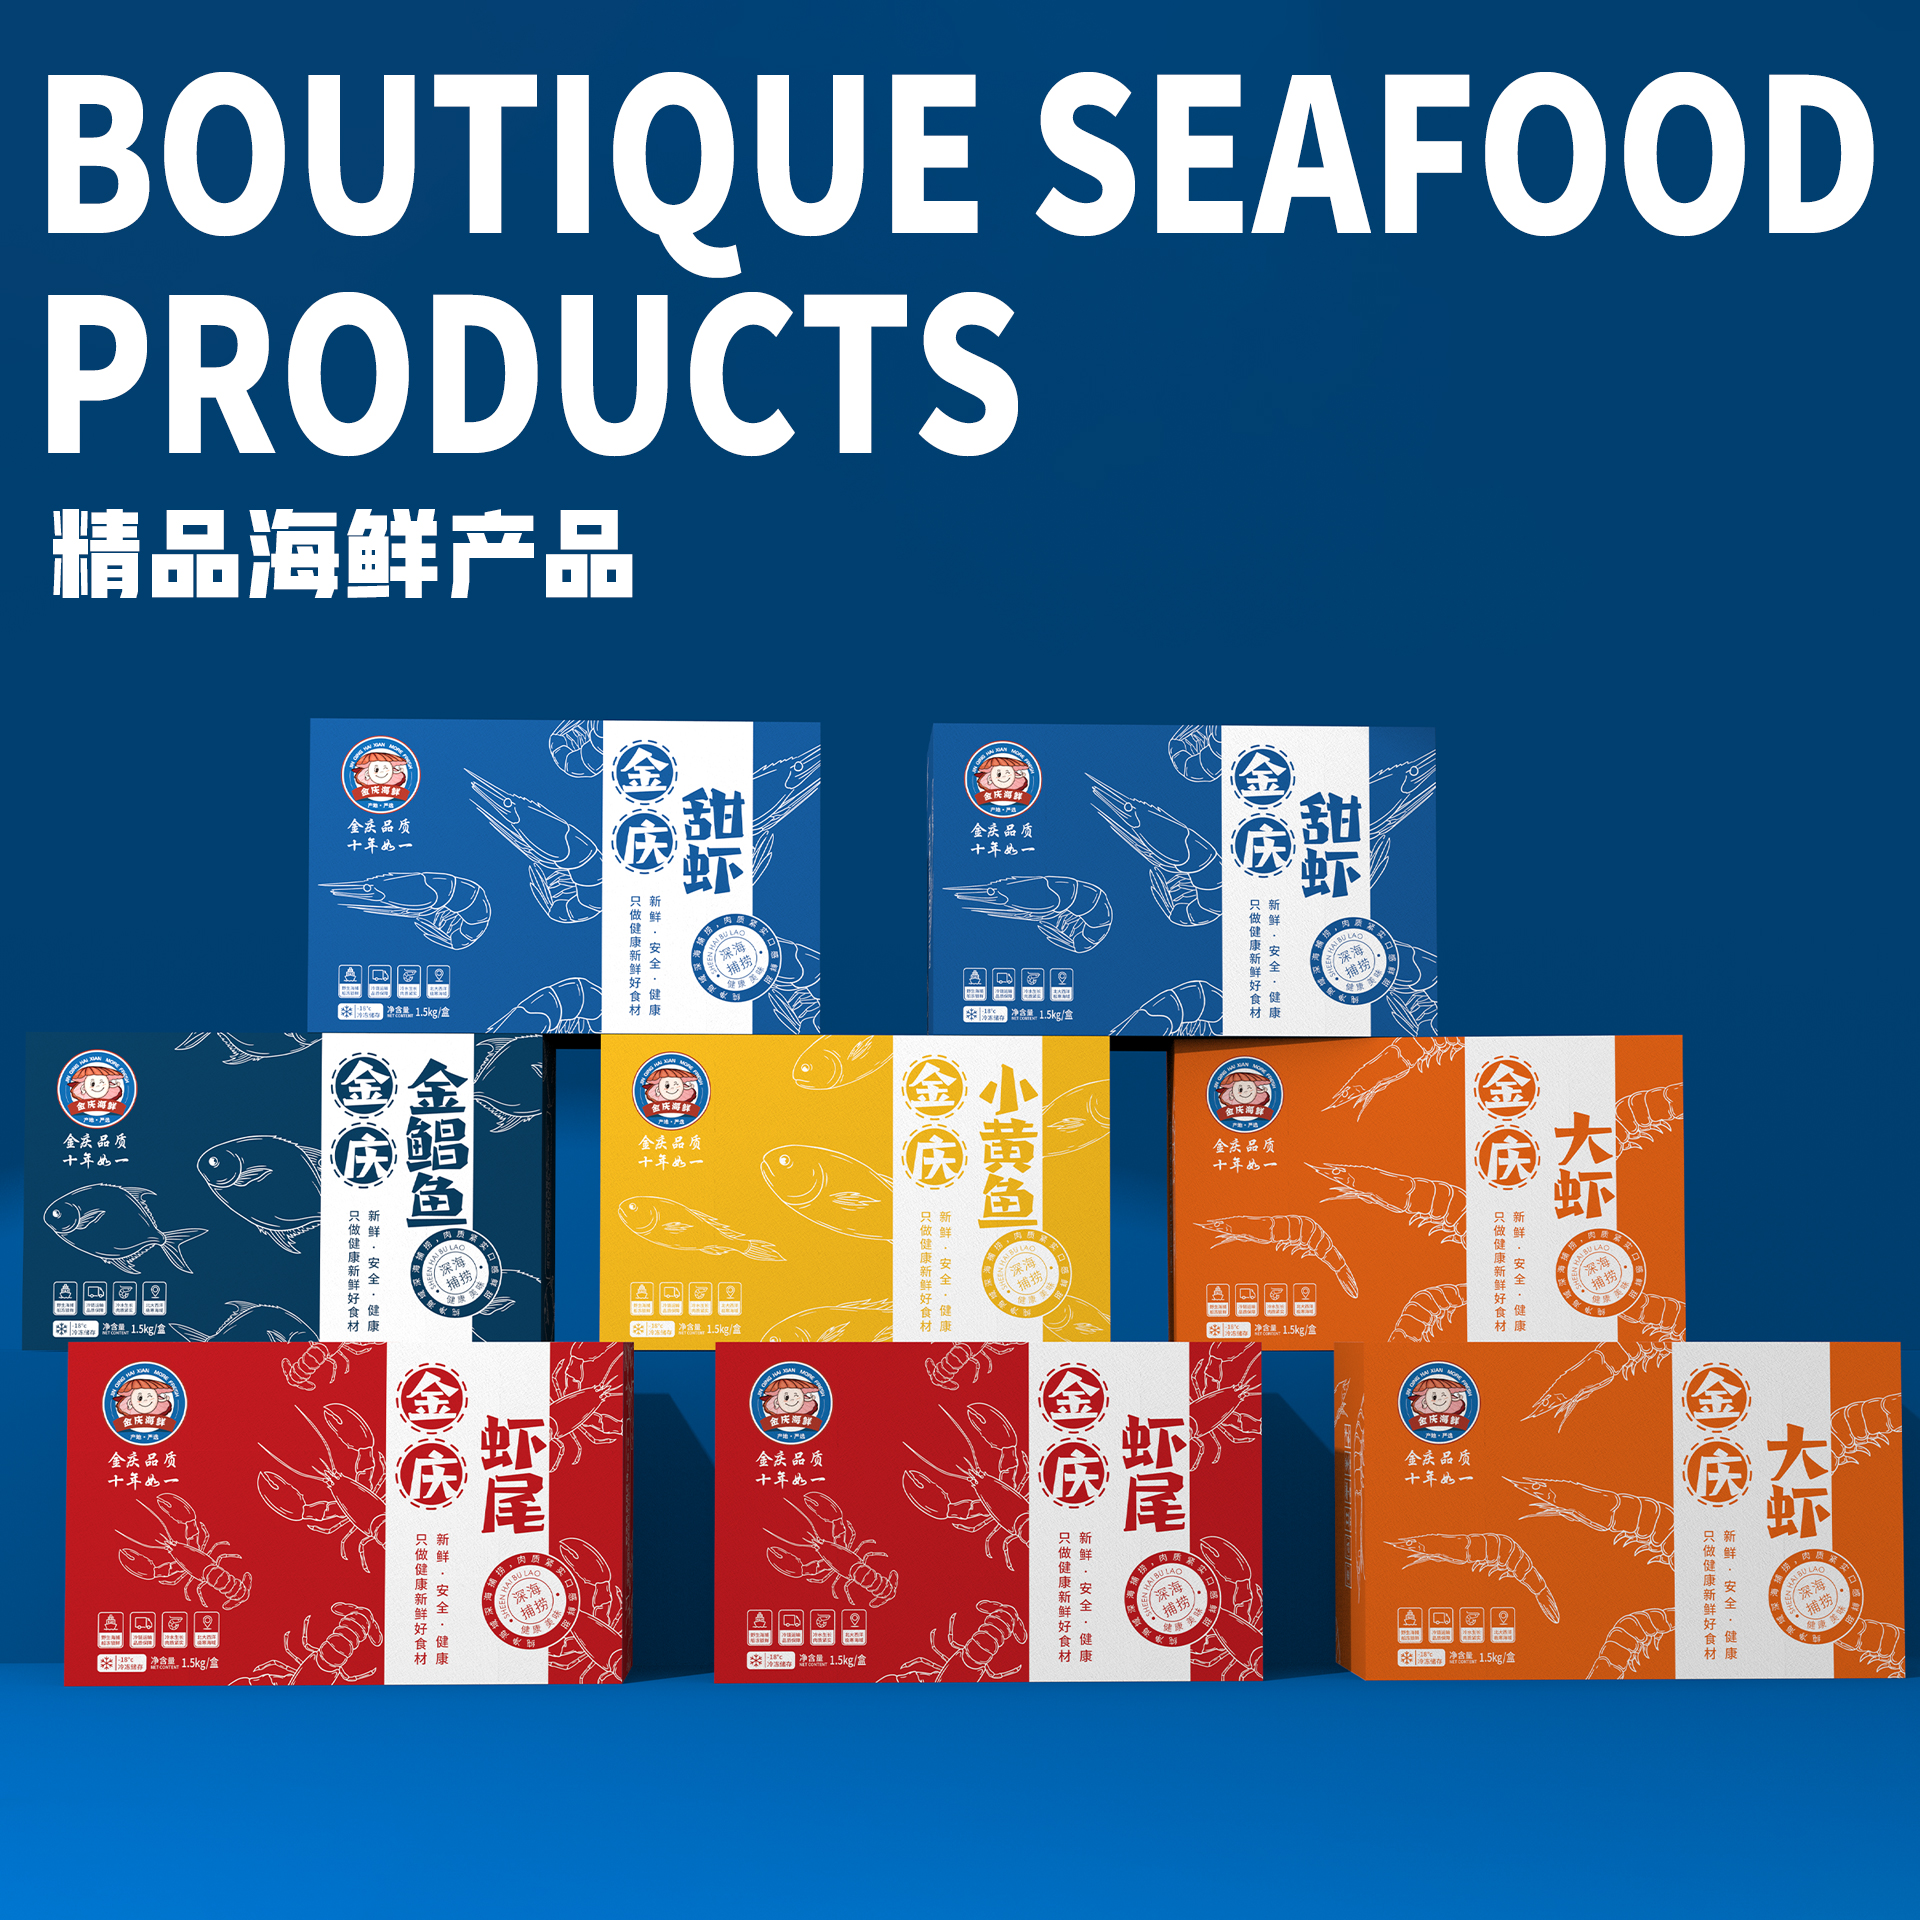 「金庆海鲜」海鲜海产品全系列包装设计